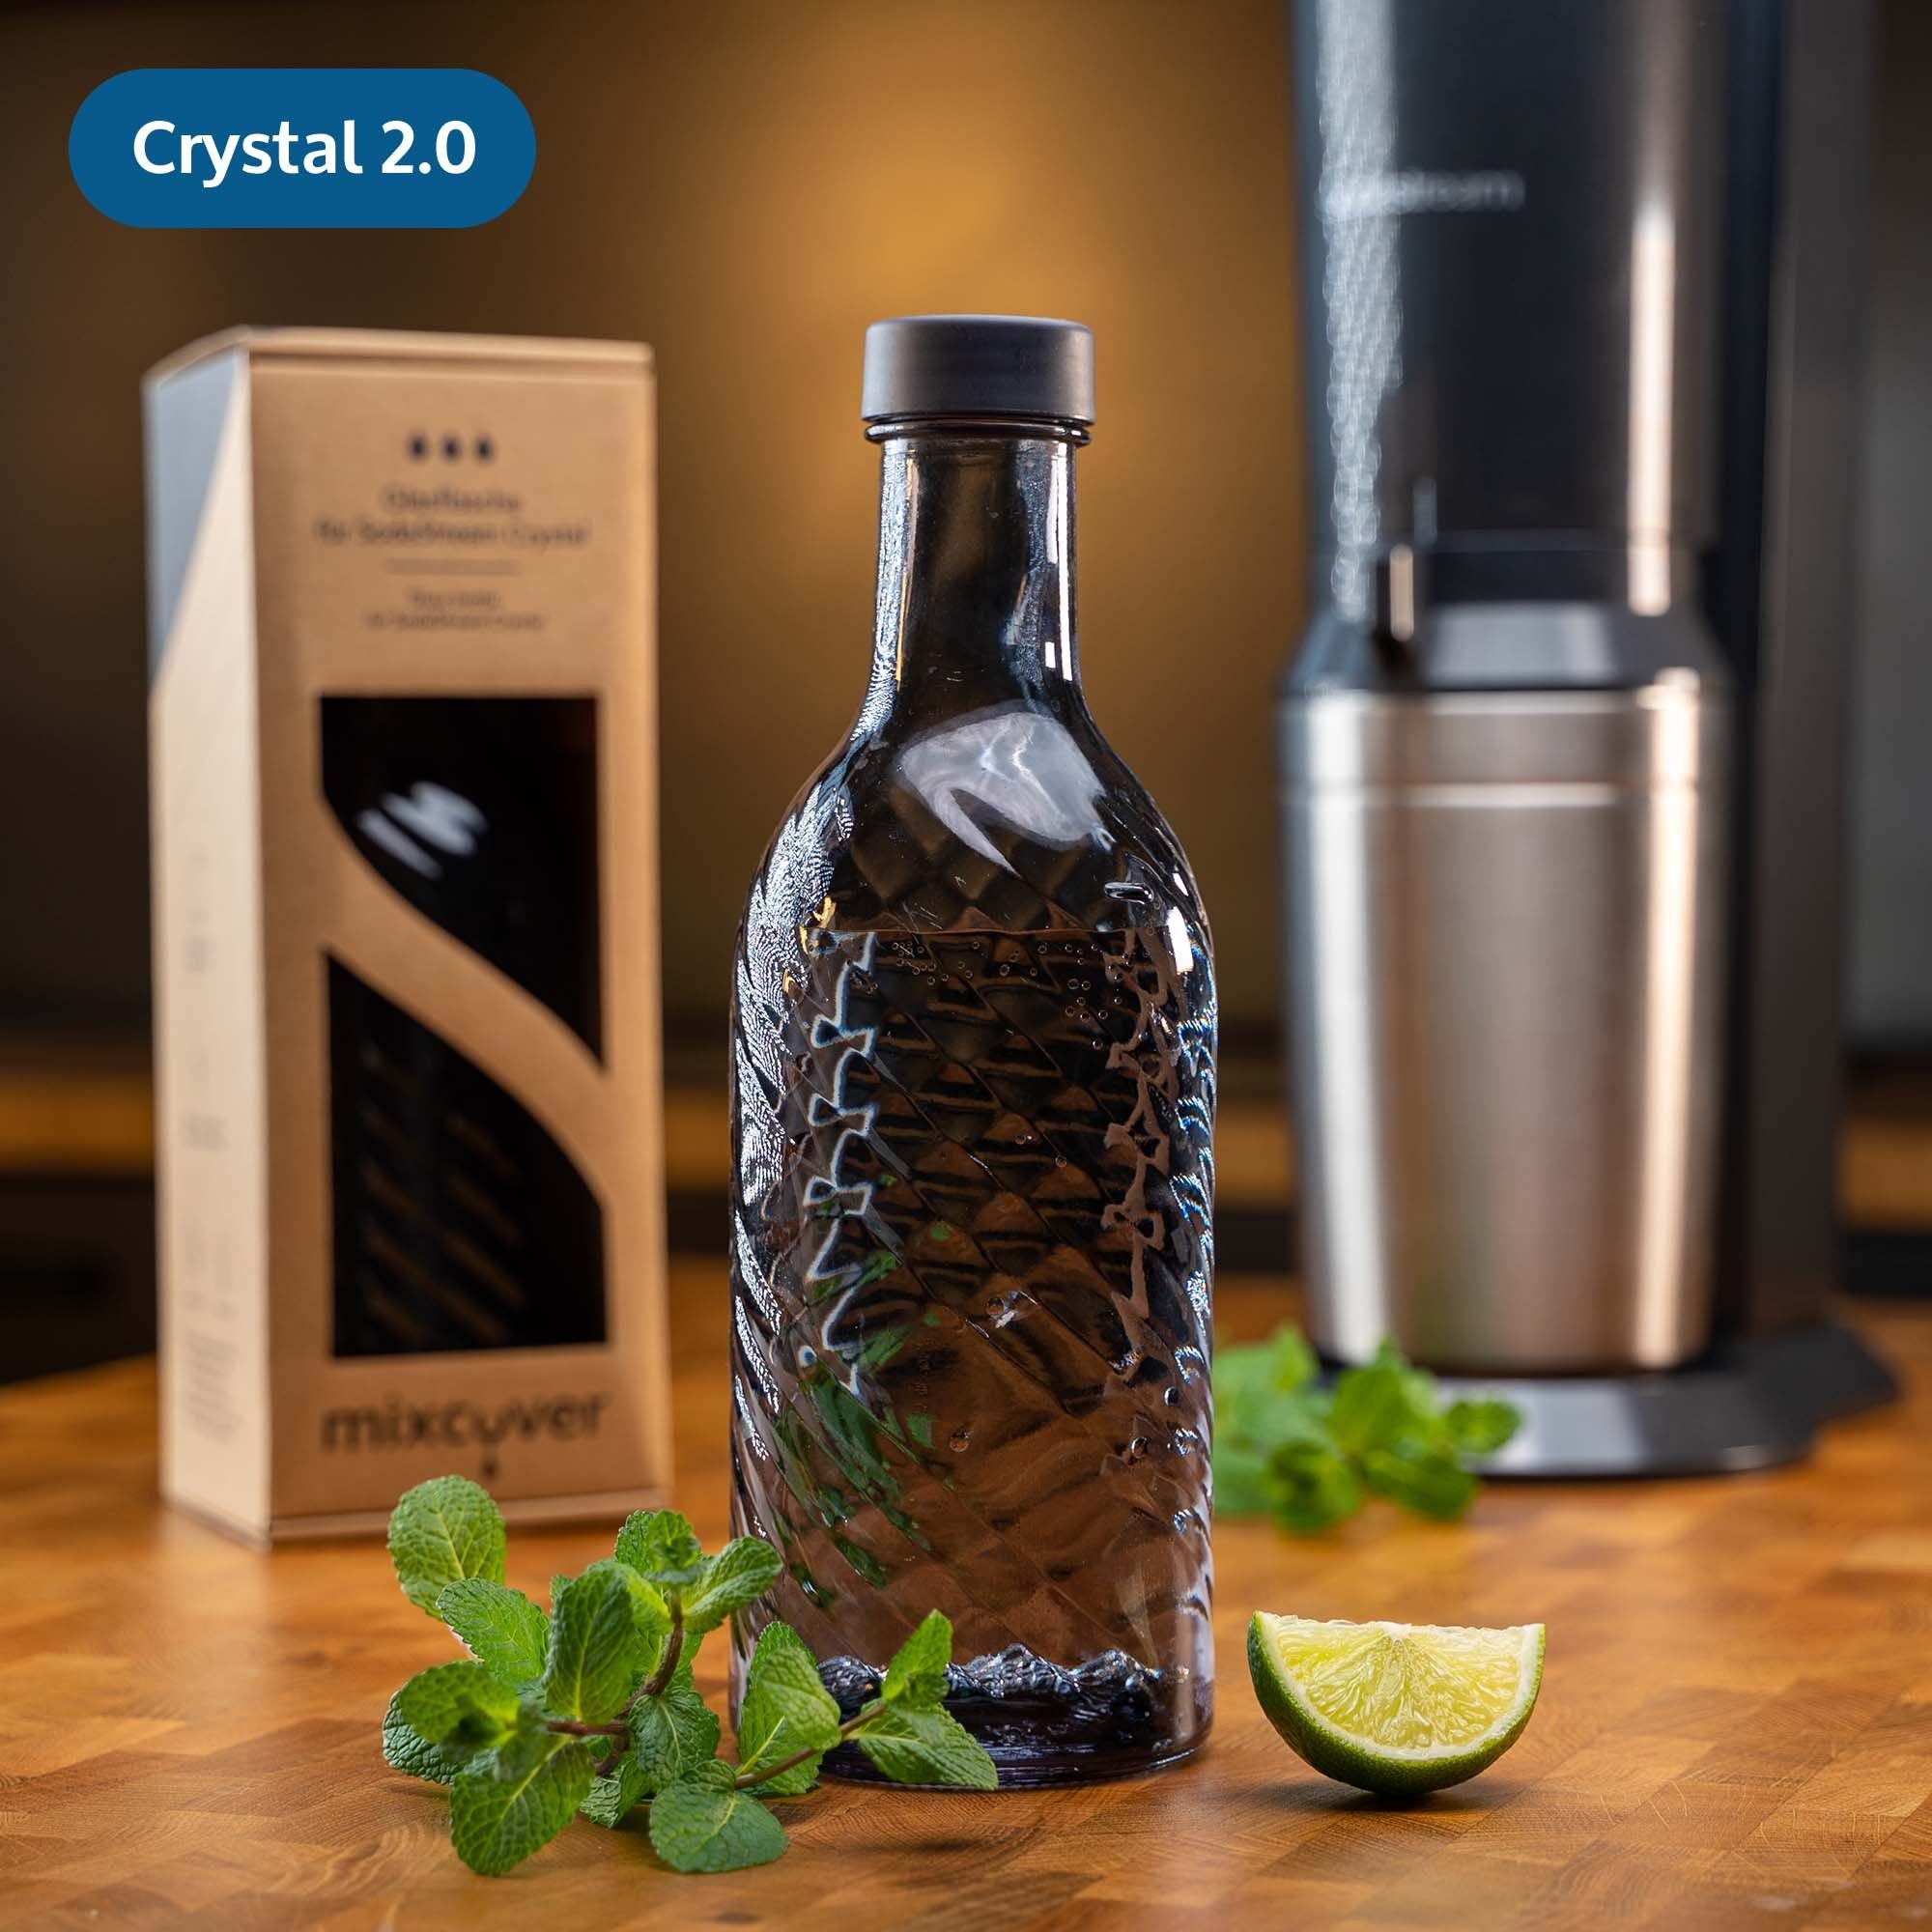 Mixcover Wassersprudler Flasche mixcover Glasflasche kompatibel mit SodaStream Crystal 2.0 mit 10% mehr Volumen Dark Grey